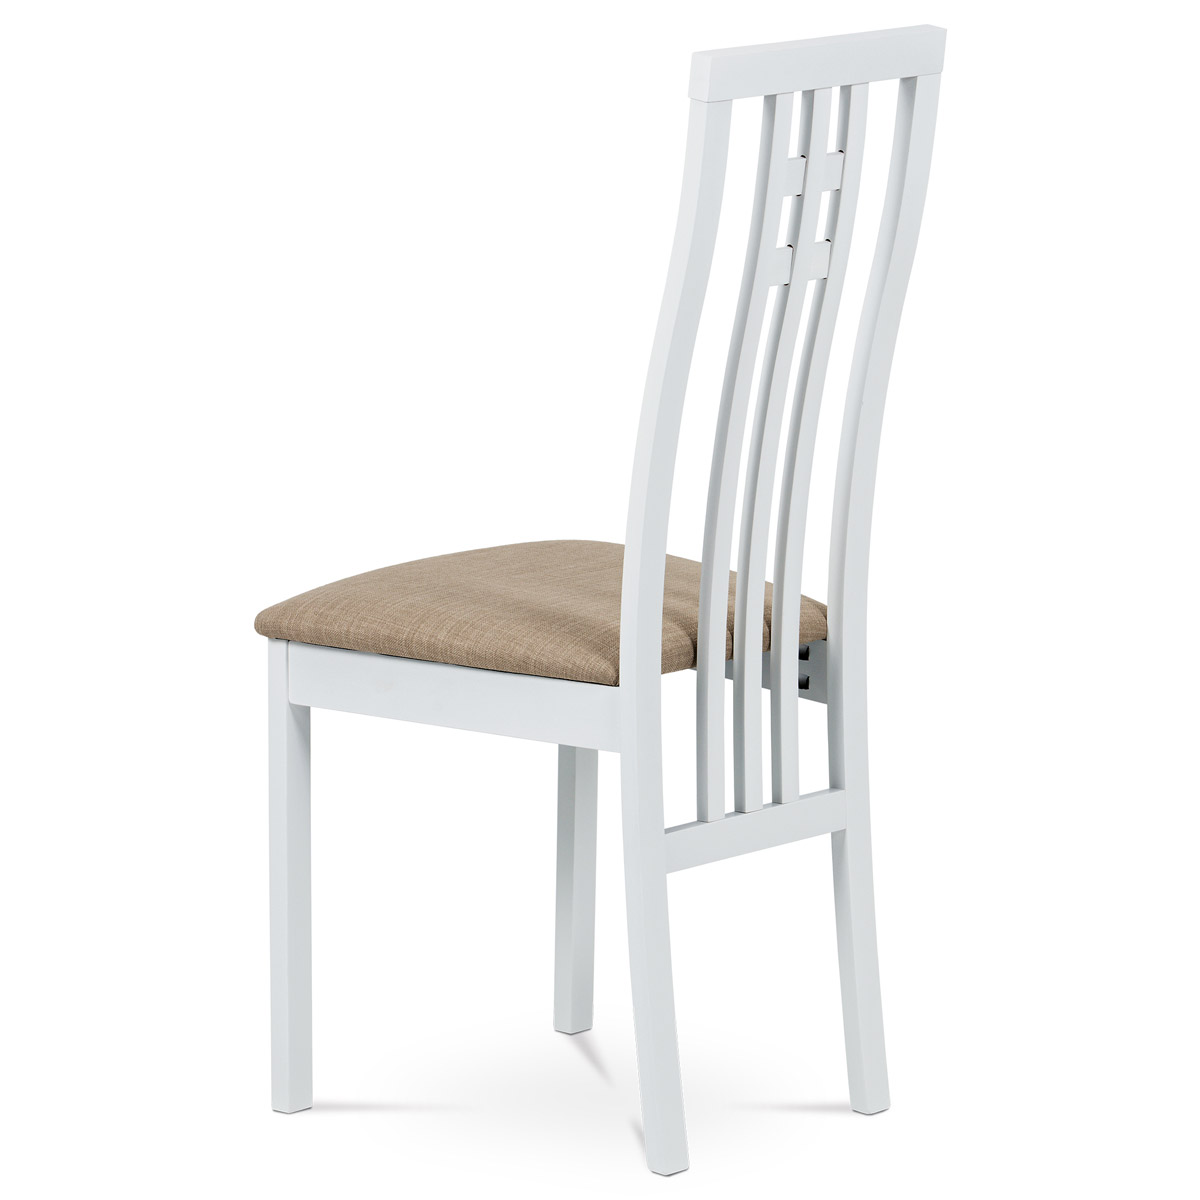 Jídelní židle, masiv buk, barva bílá, látkový béžový potah